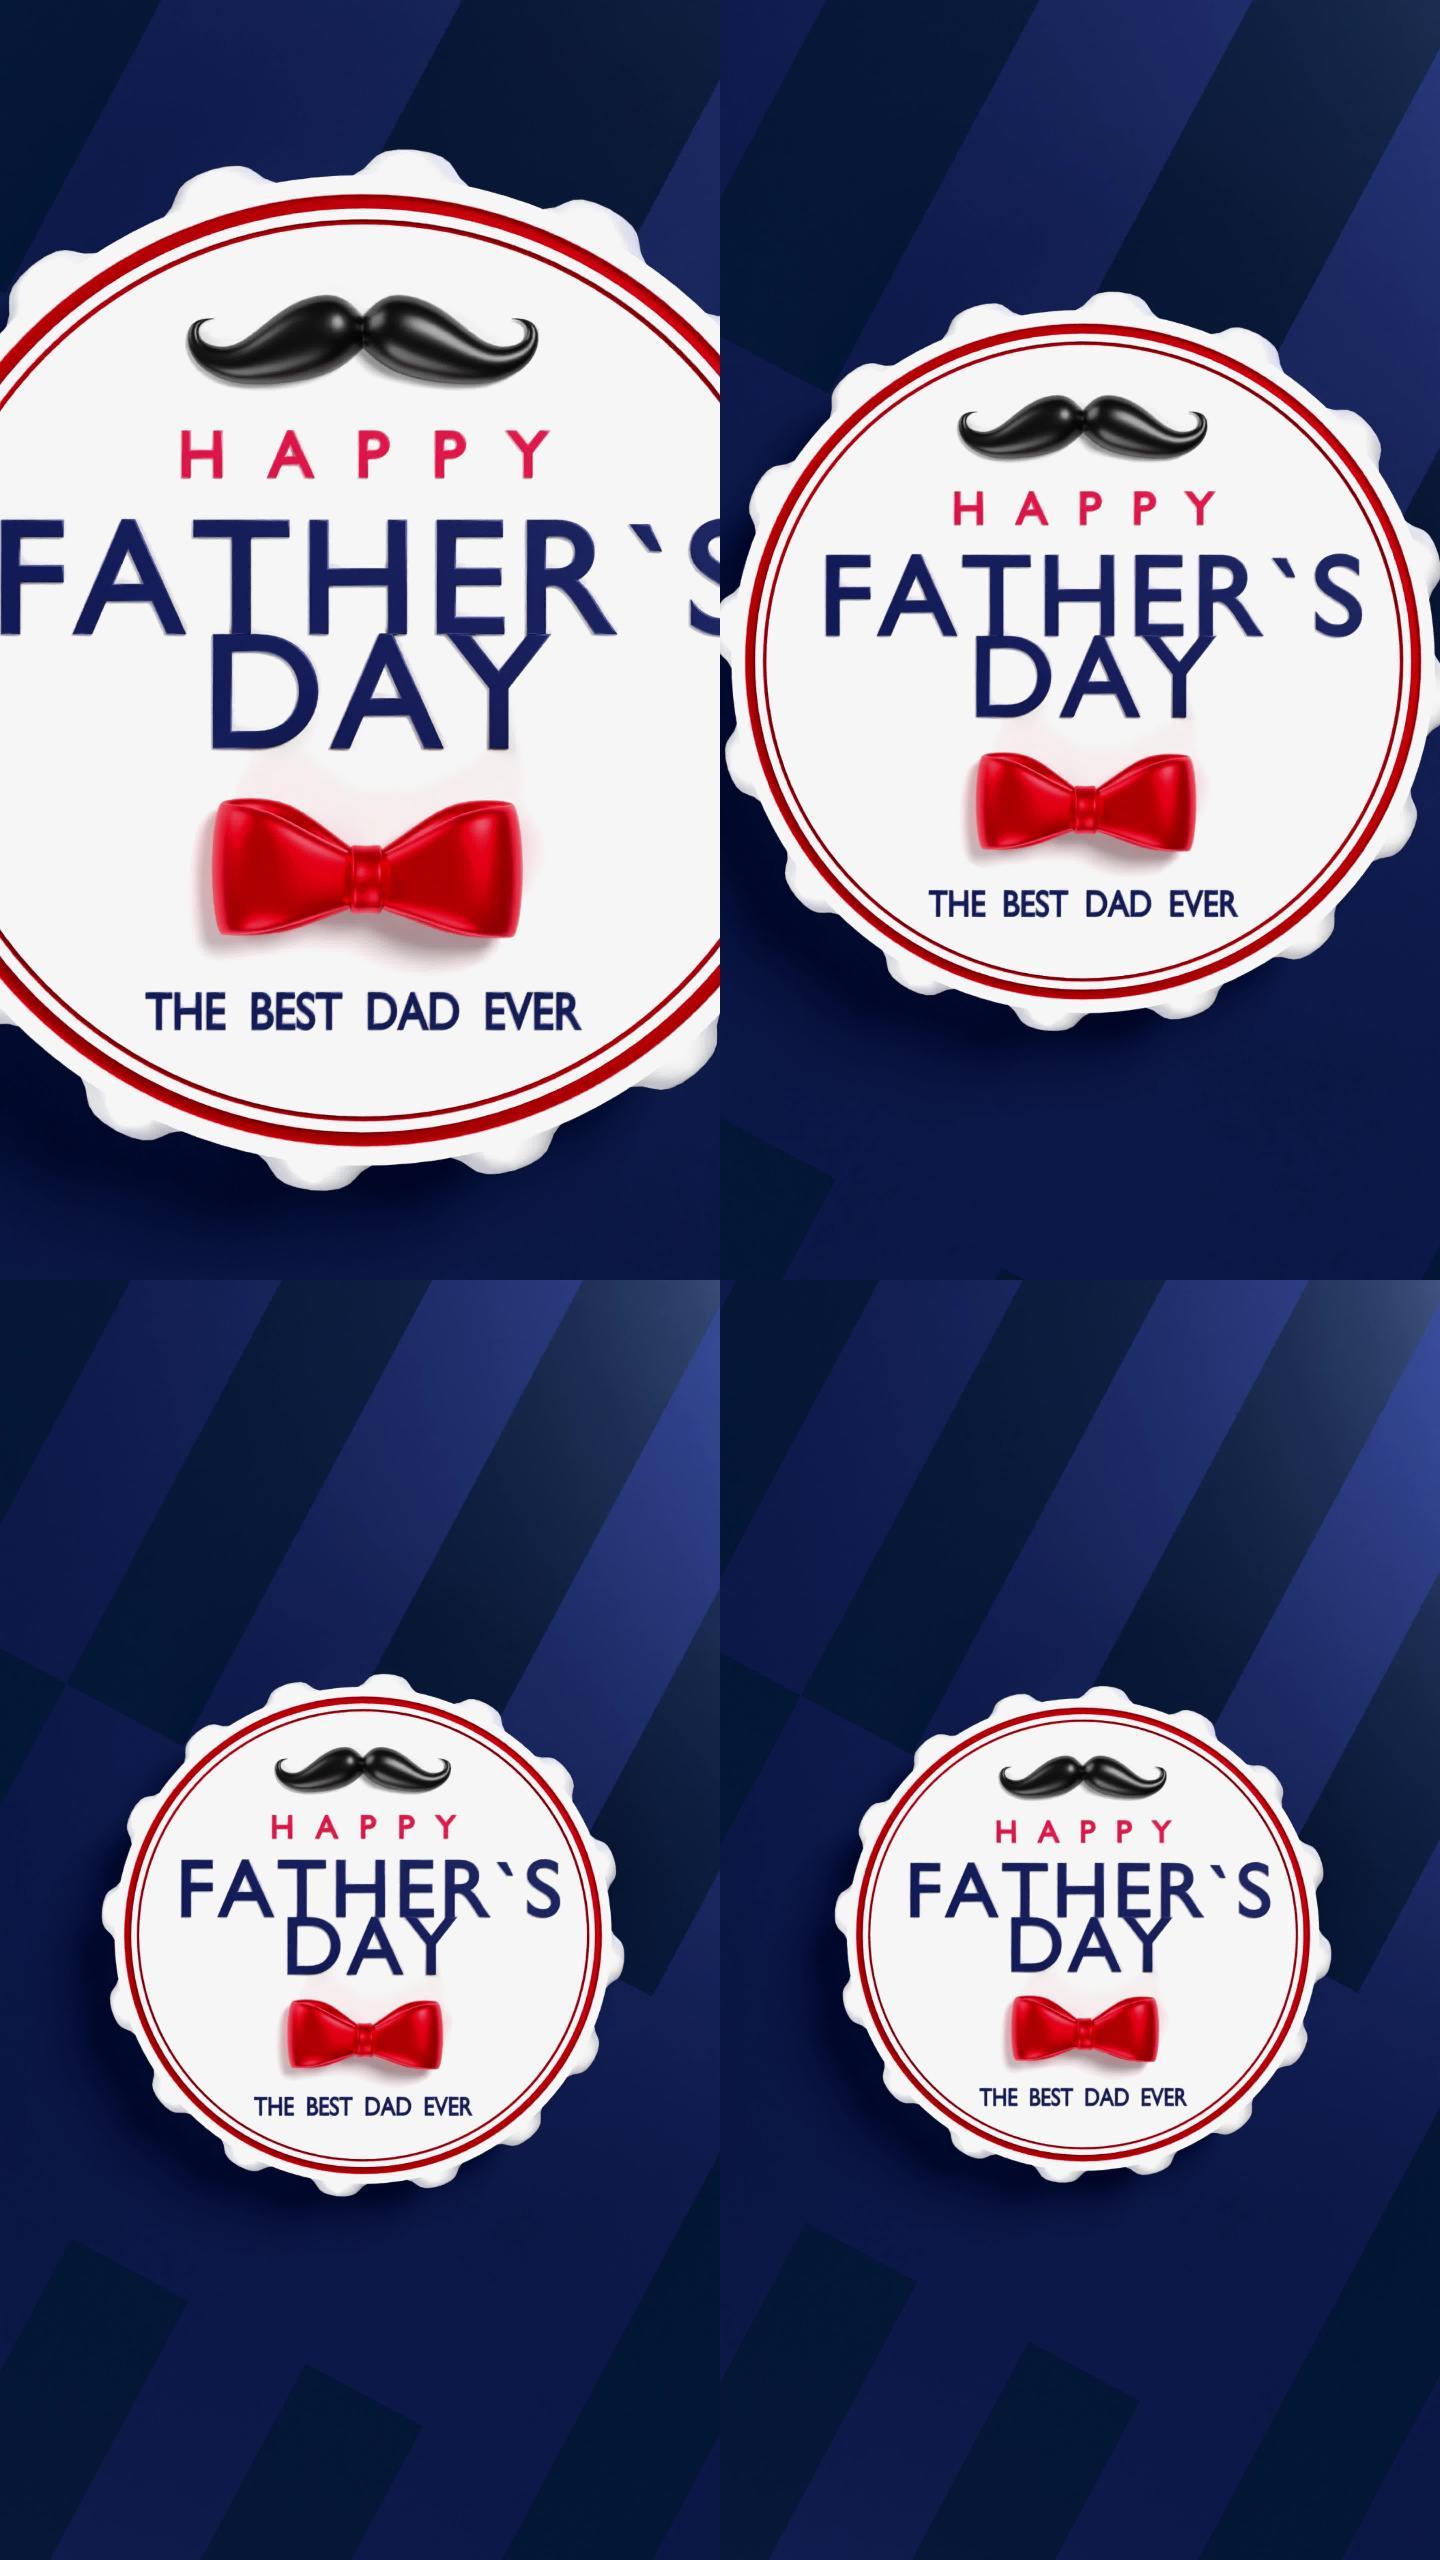 4K分辨率抽象蓝黑背景上的垂直“父亲节快乐”最佳父亲头衔